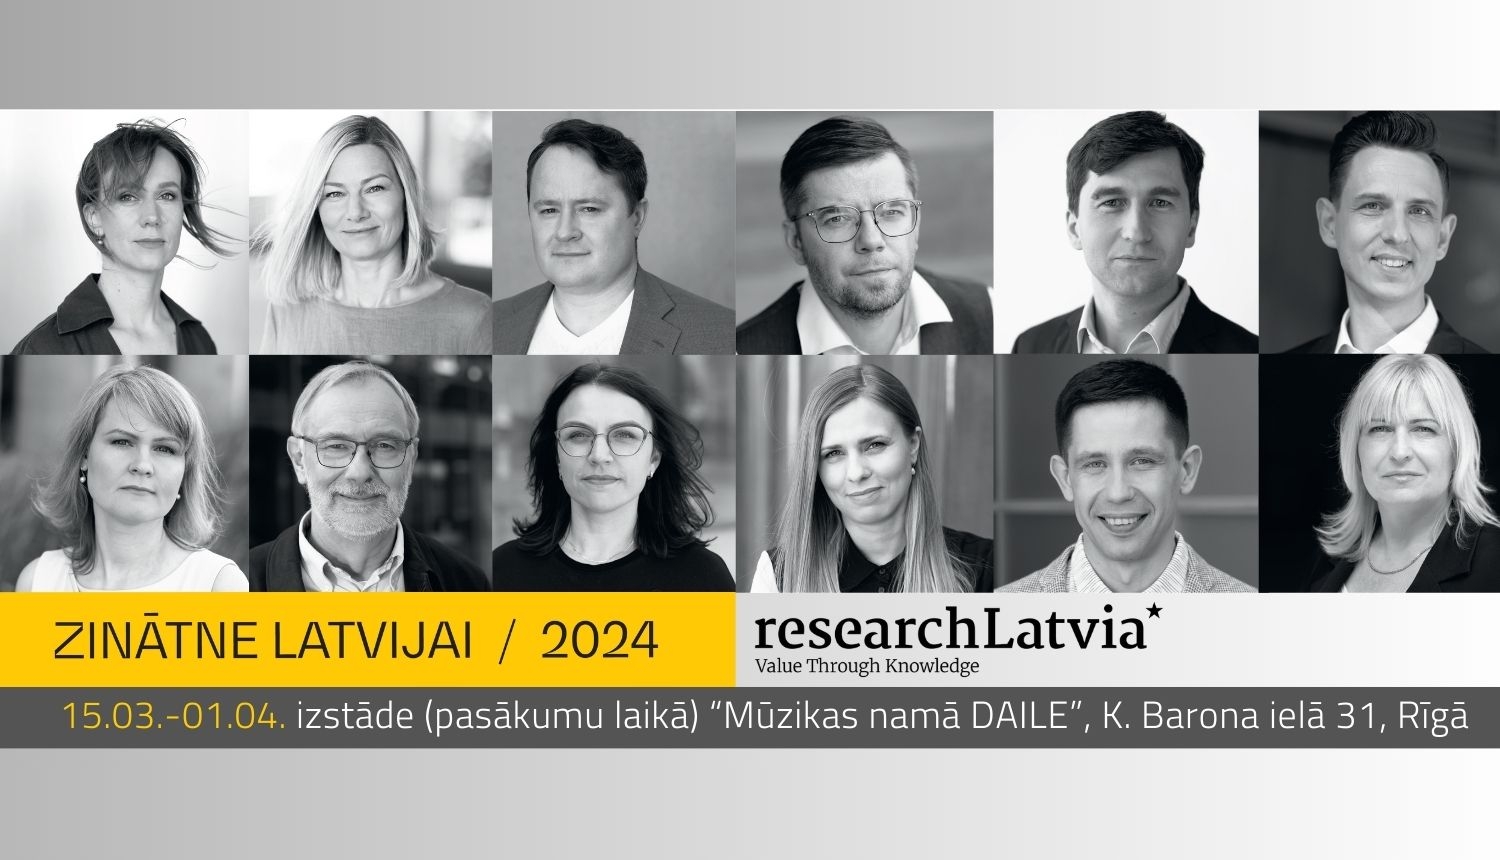 Izstādes “Zinātne Latvijai 2024” plakāts, kurā melnbaltās fotogrāfijās redzami visi 12 pētnieki un pētnieces, kas iekļauti 2024. gada zinātnes kalendārā